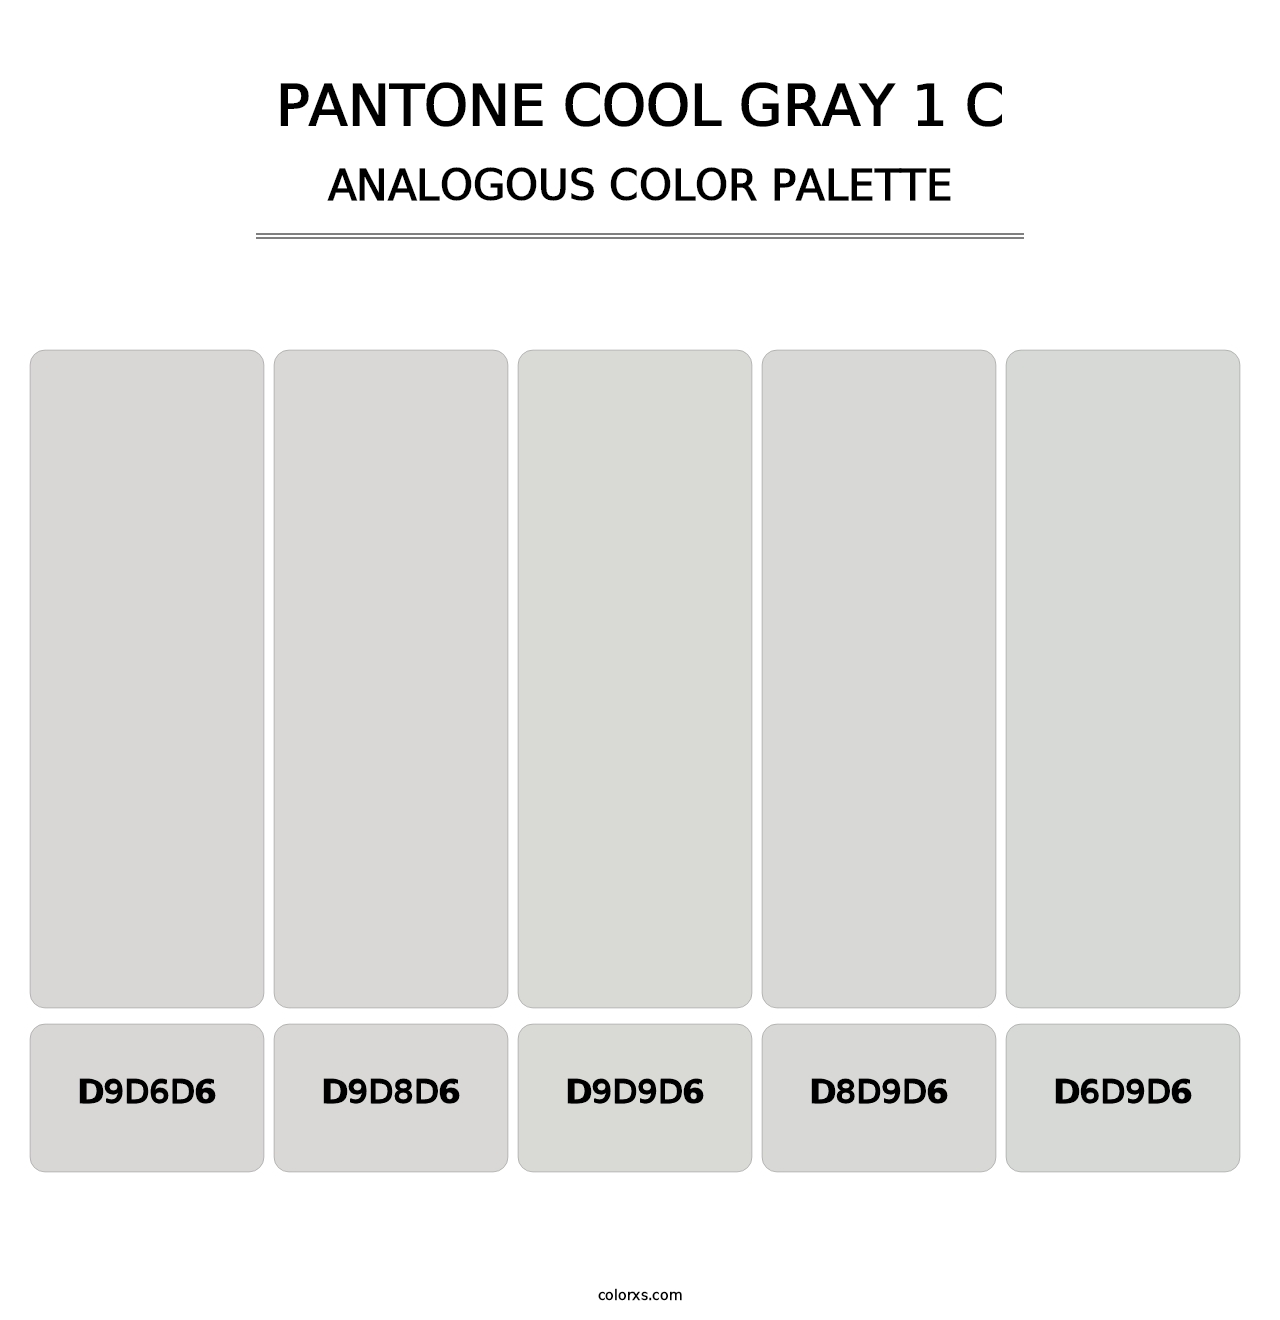 PANTONE Cool Gray 1 C - Analogous Color Palette